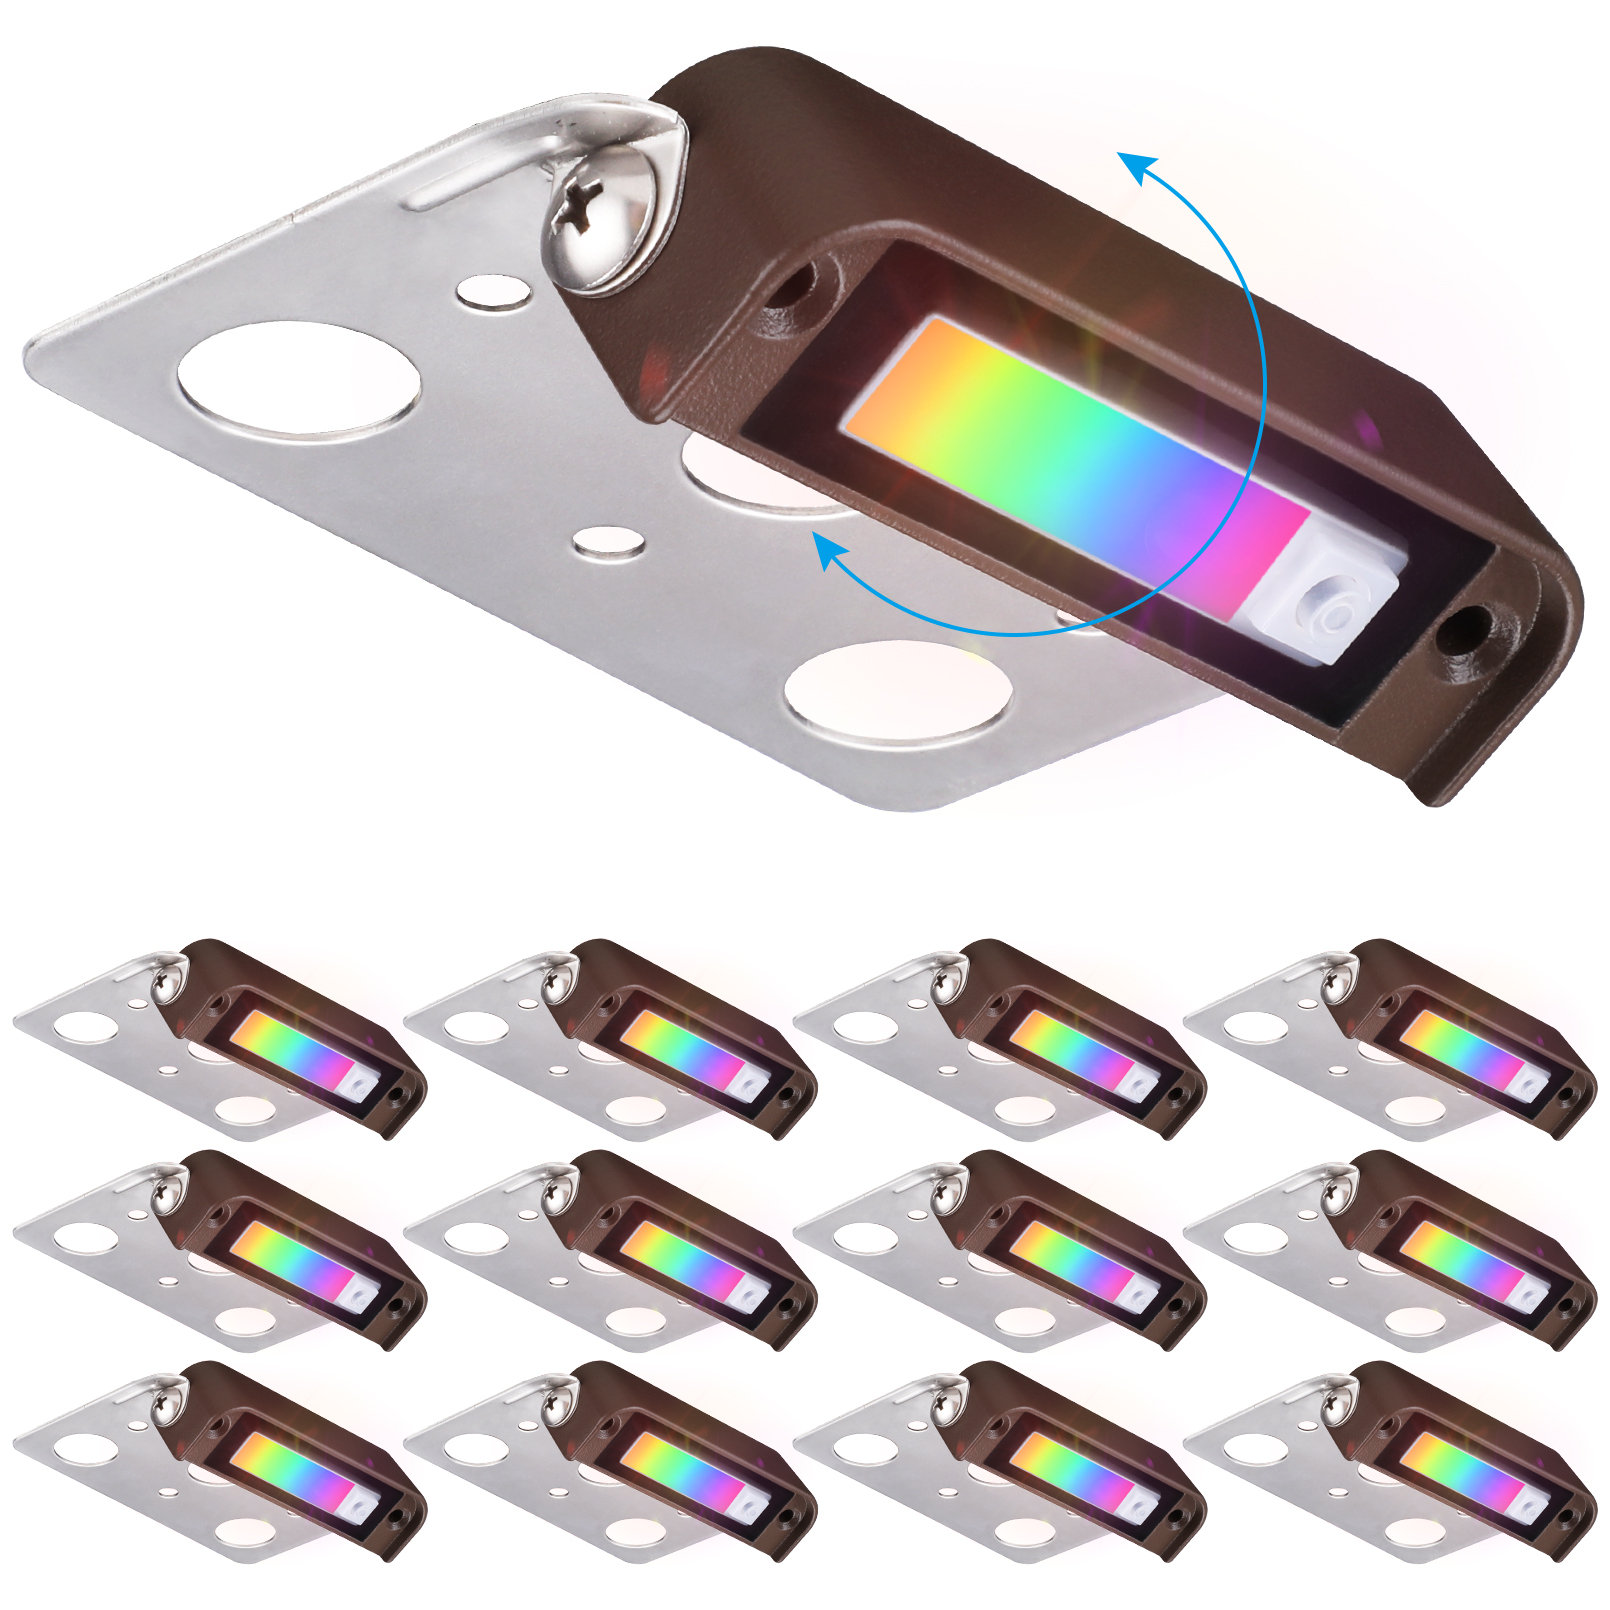 https://assets.wfcdn.com/im/04277900/compr-r85/2198/219894283/bronze-4inch-metal-integrated-led-hardscape-light-hardwired-color-changing.jpg